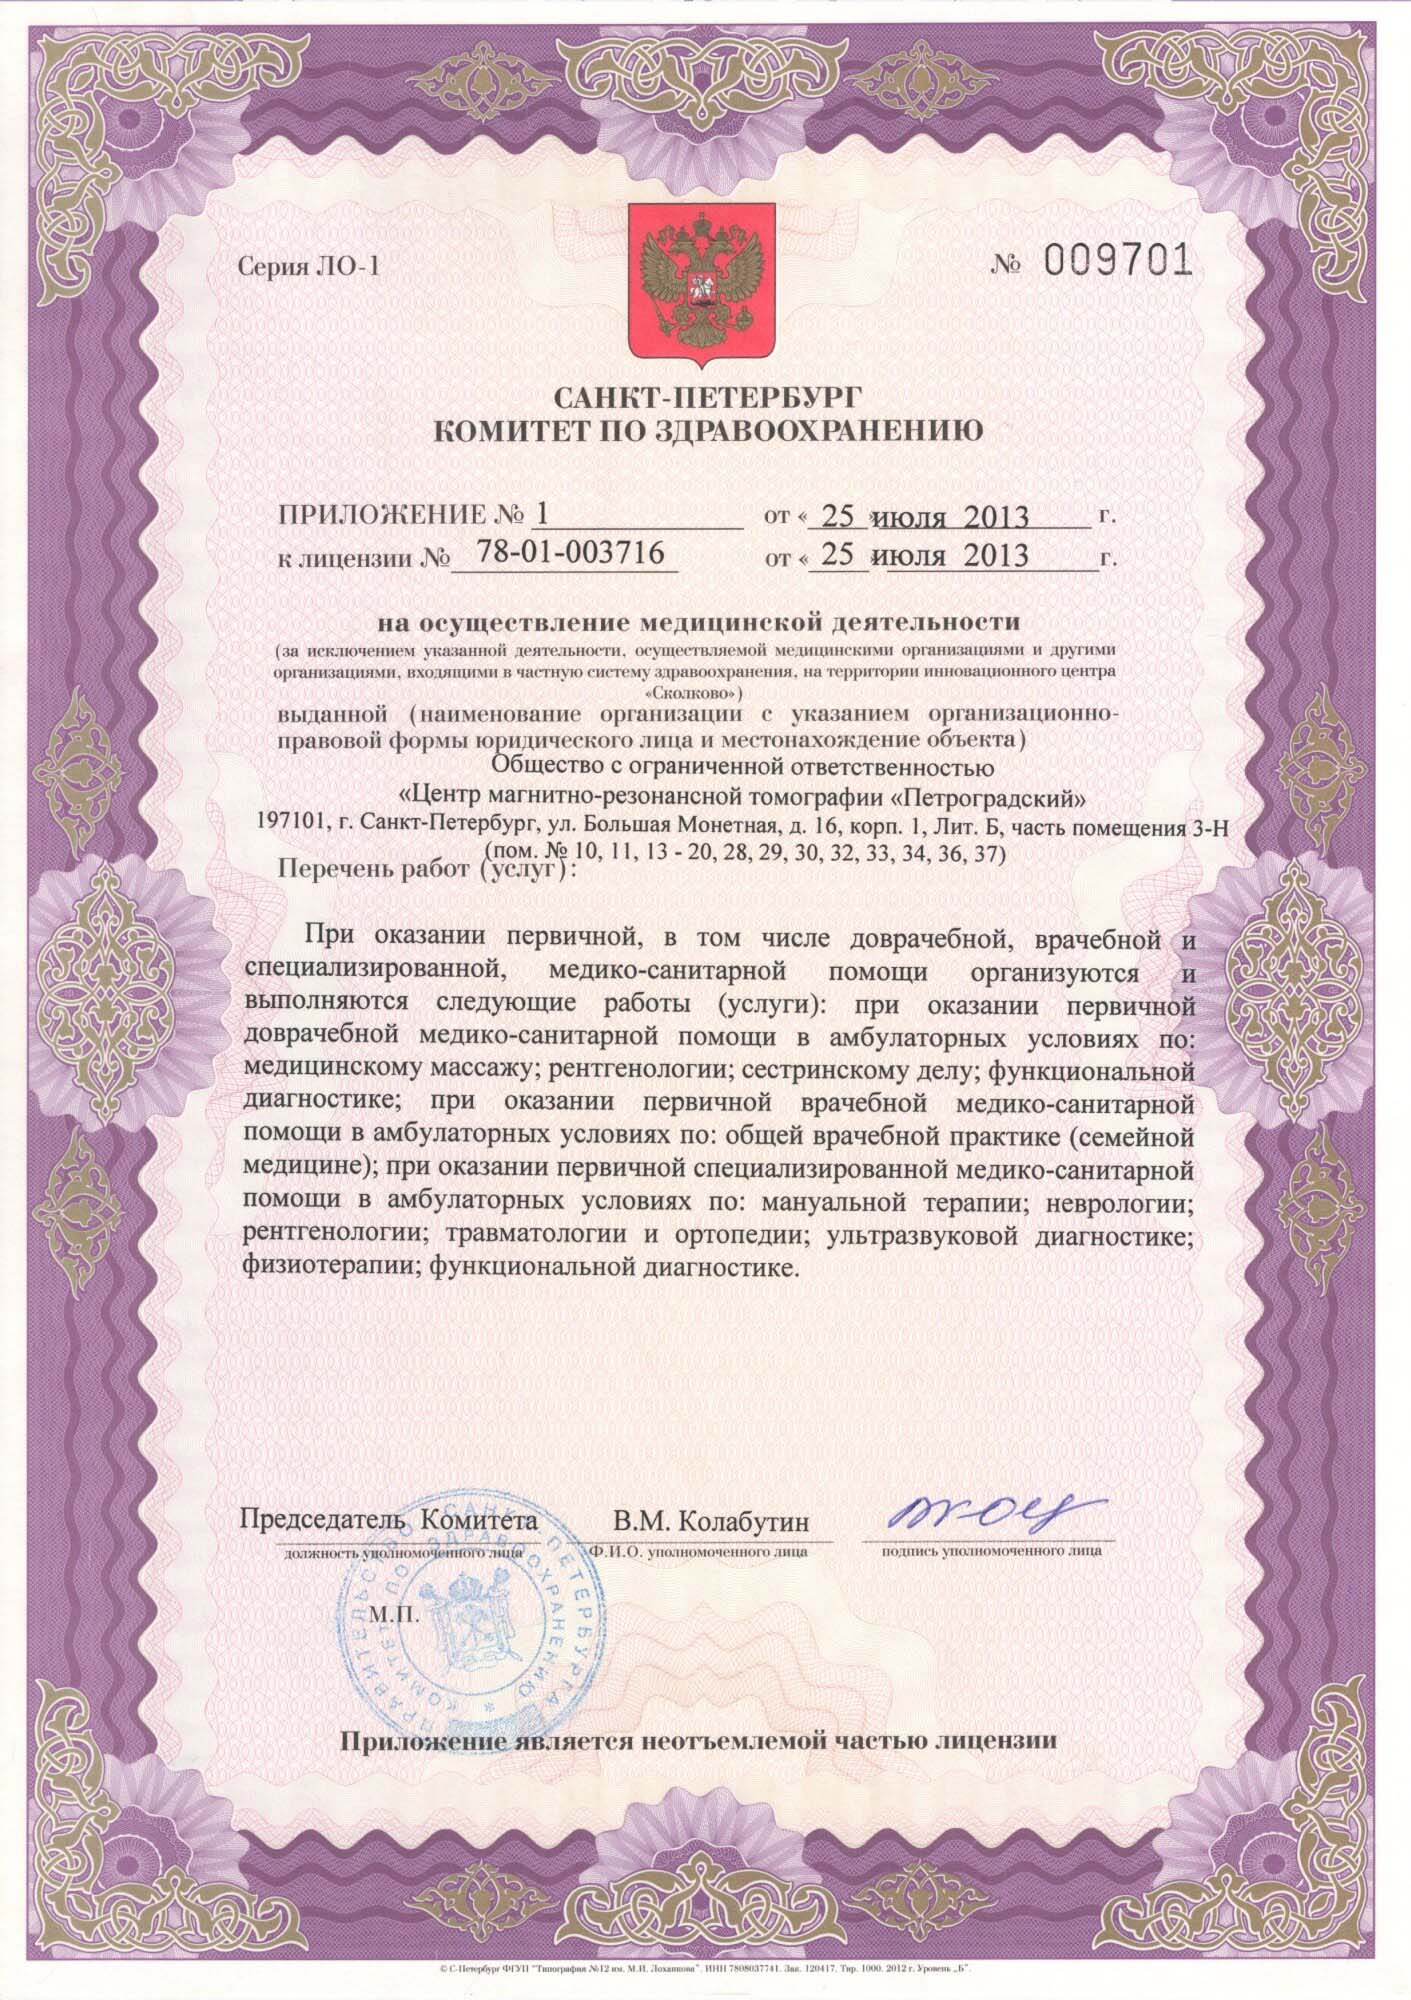 ЦМРТ Петроградская лицензия №2